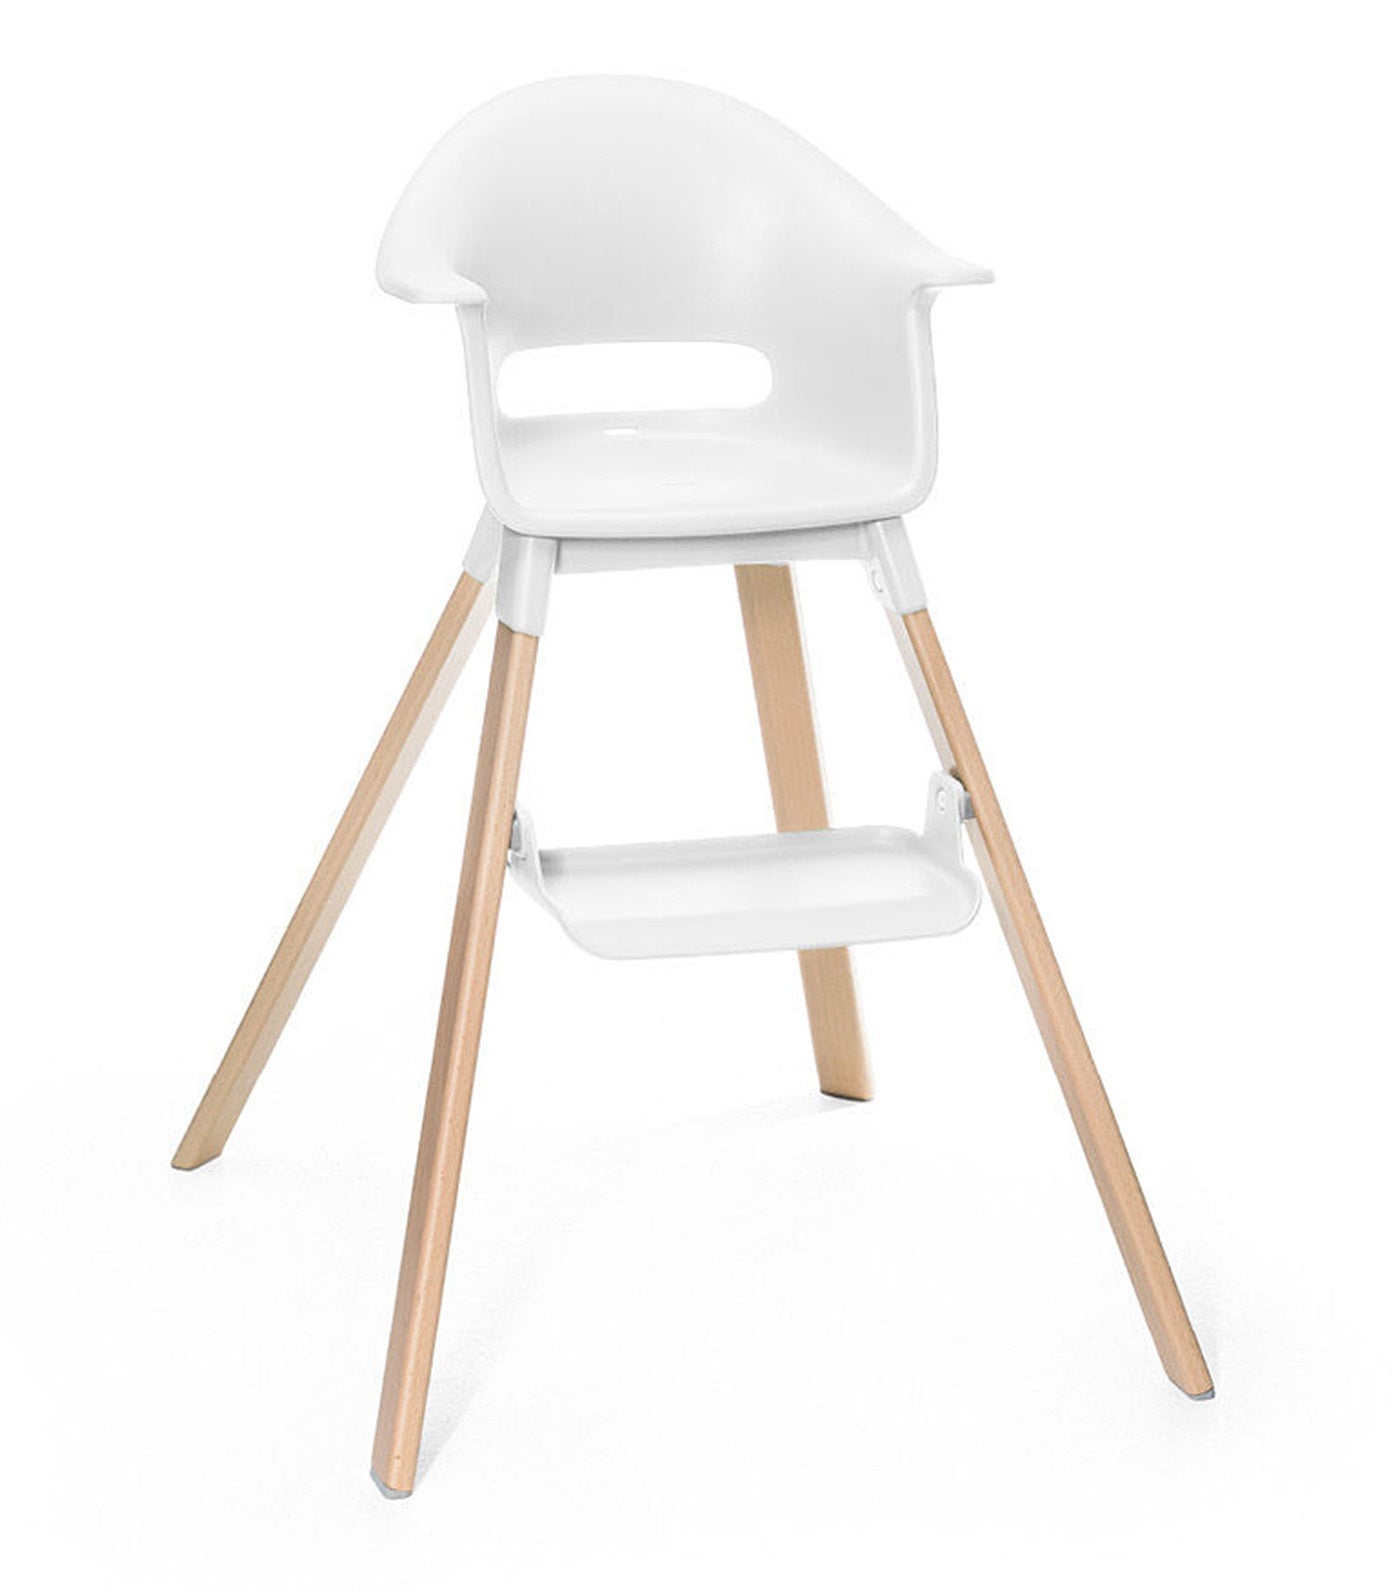 Clikk™ High Chair White